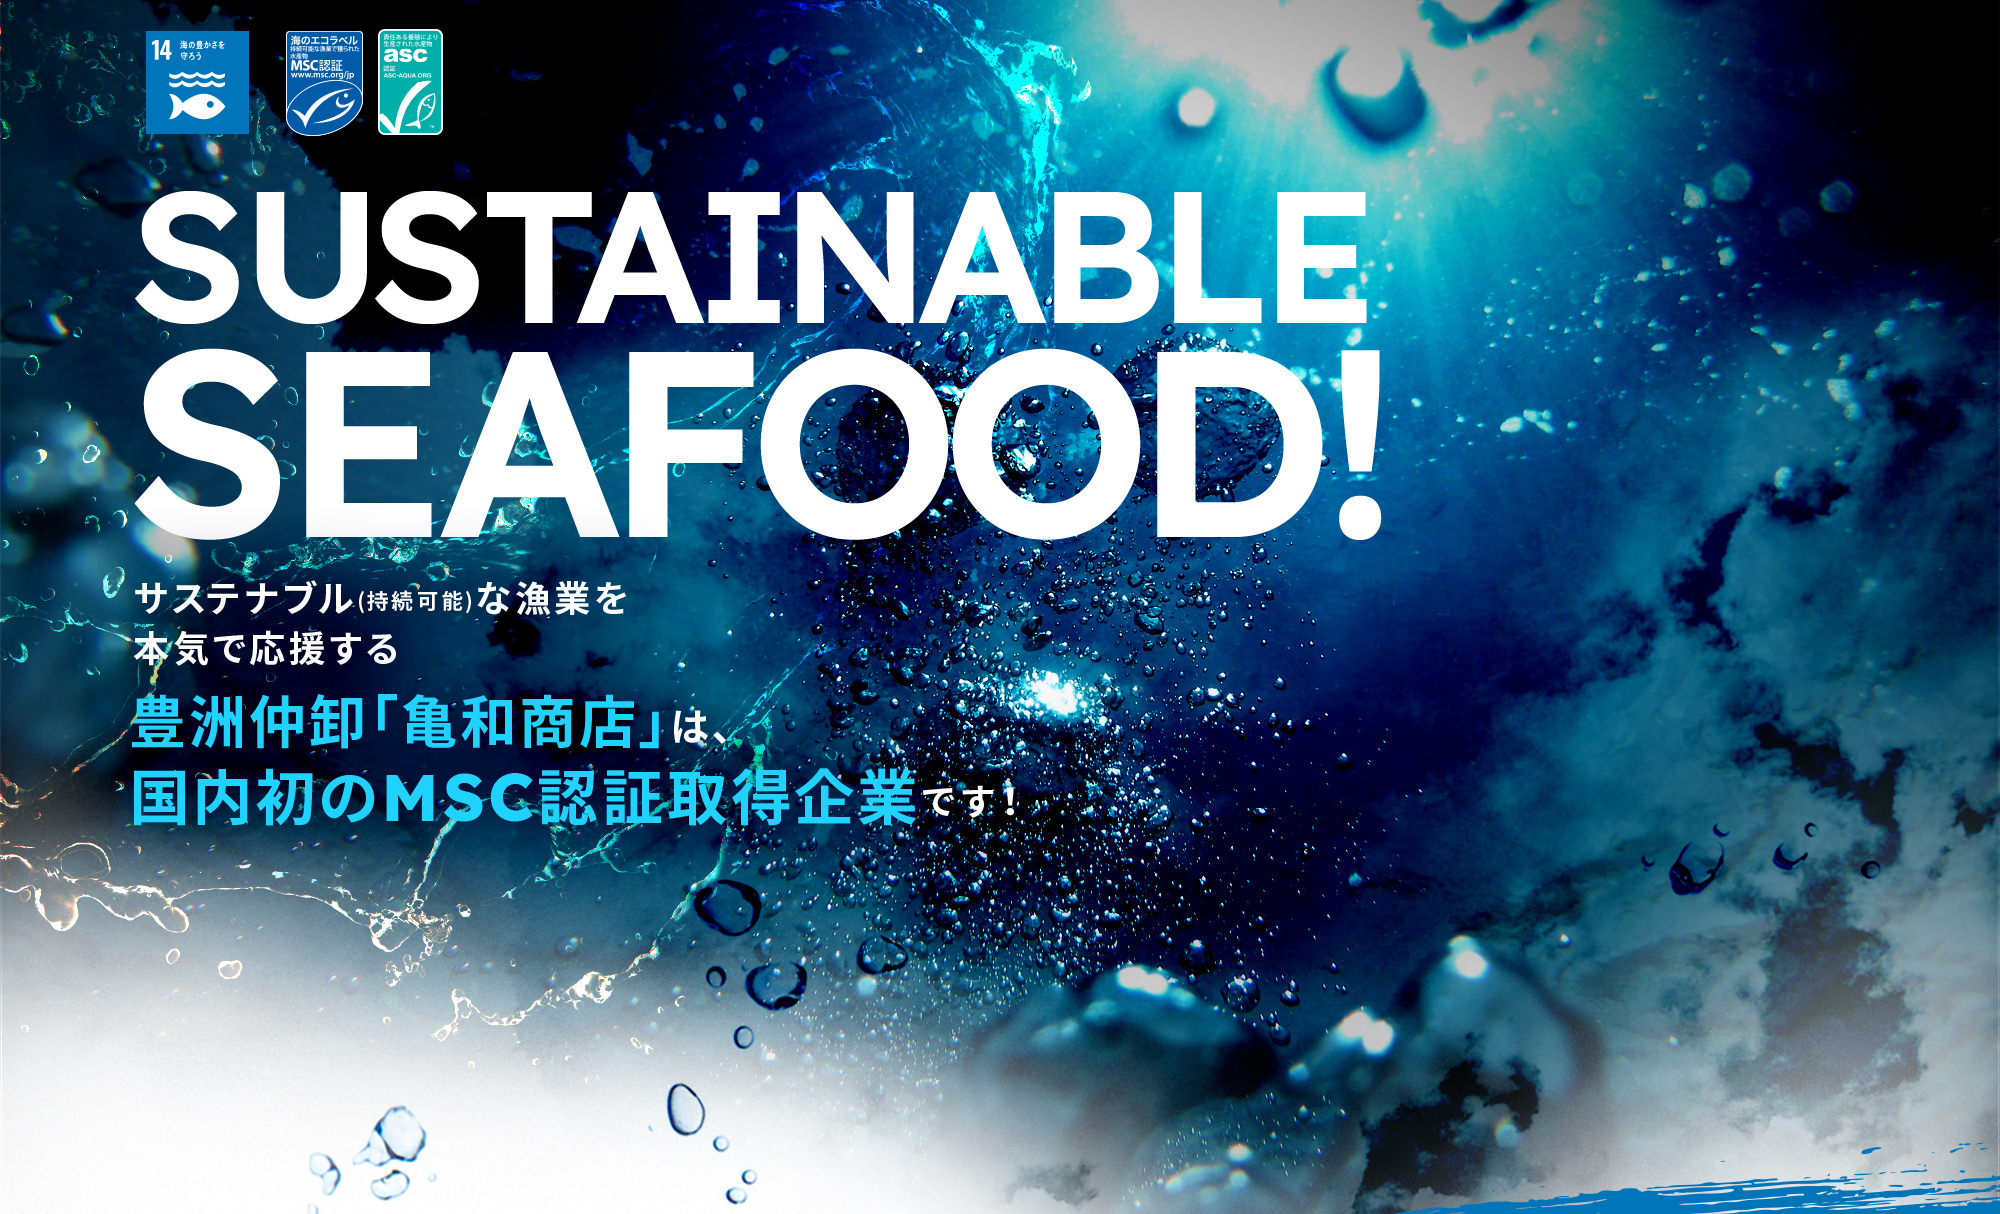 サステナブル(持続可能)な漁業を本気で応援する豊洲仲卸「亀和商店」は、国内初のMSC認証取得企業です！